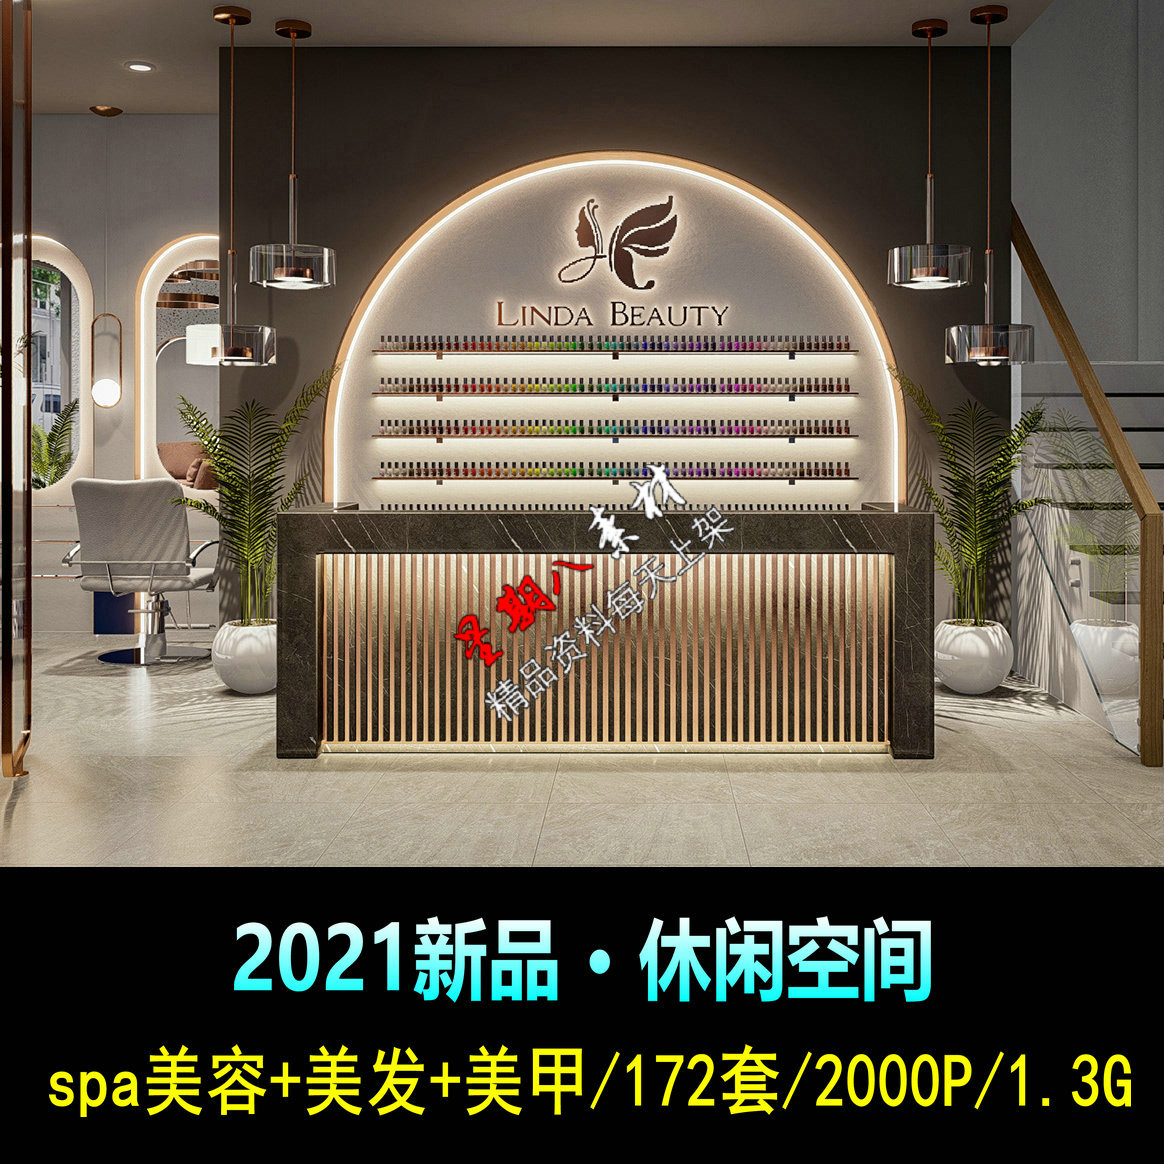 H74网红休闲极简轻奢2021美容美发spa美甲室内装修设计图片案例